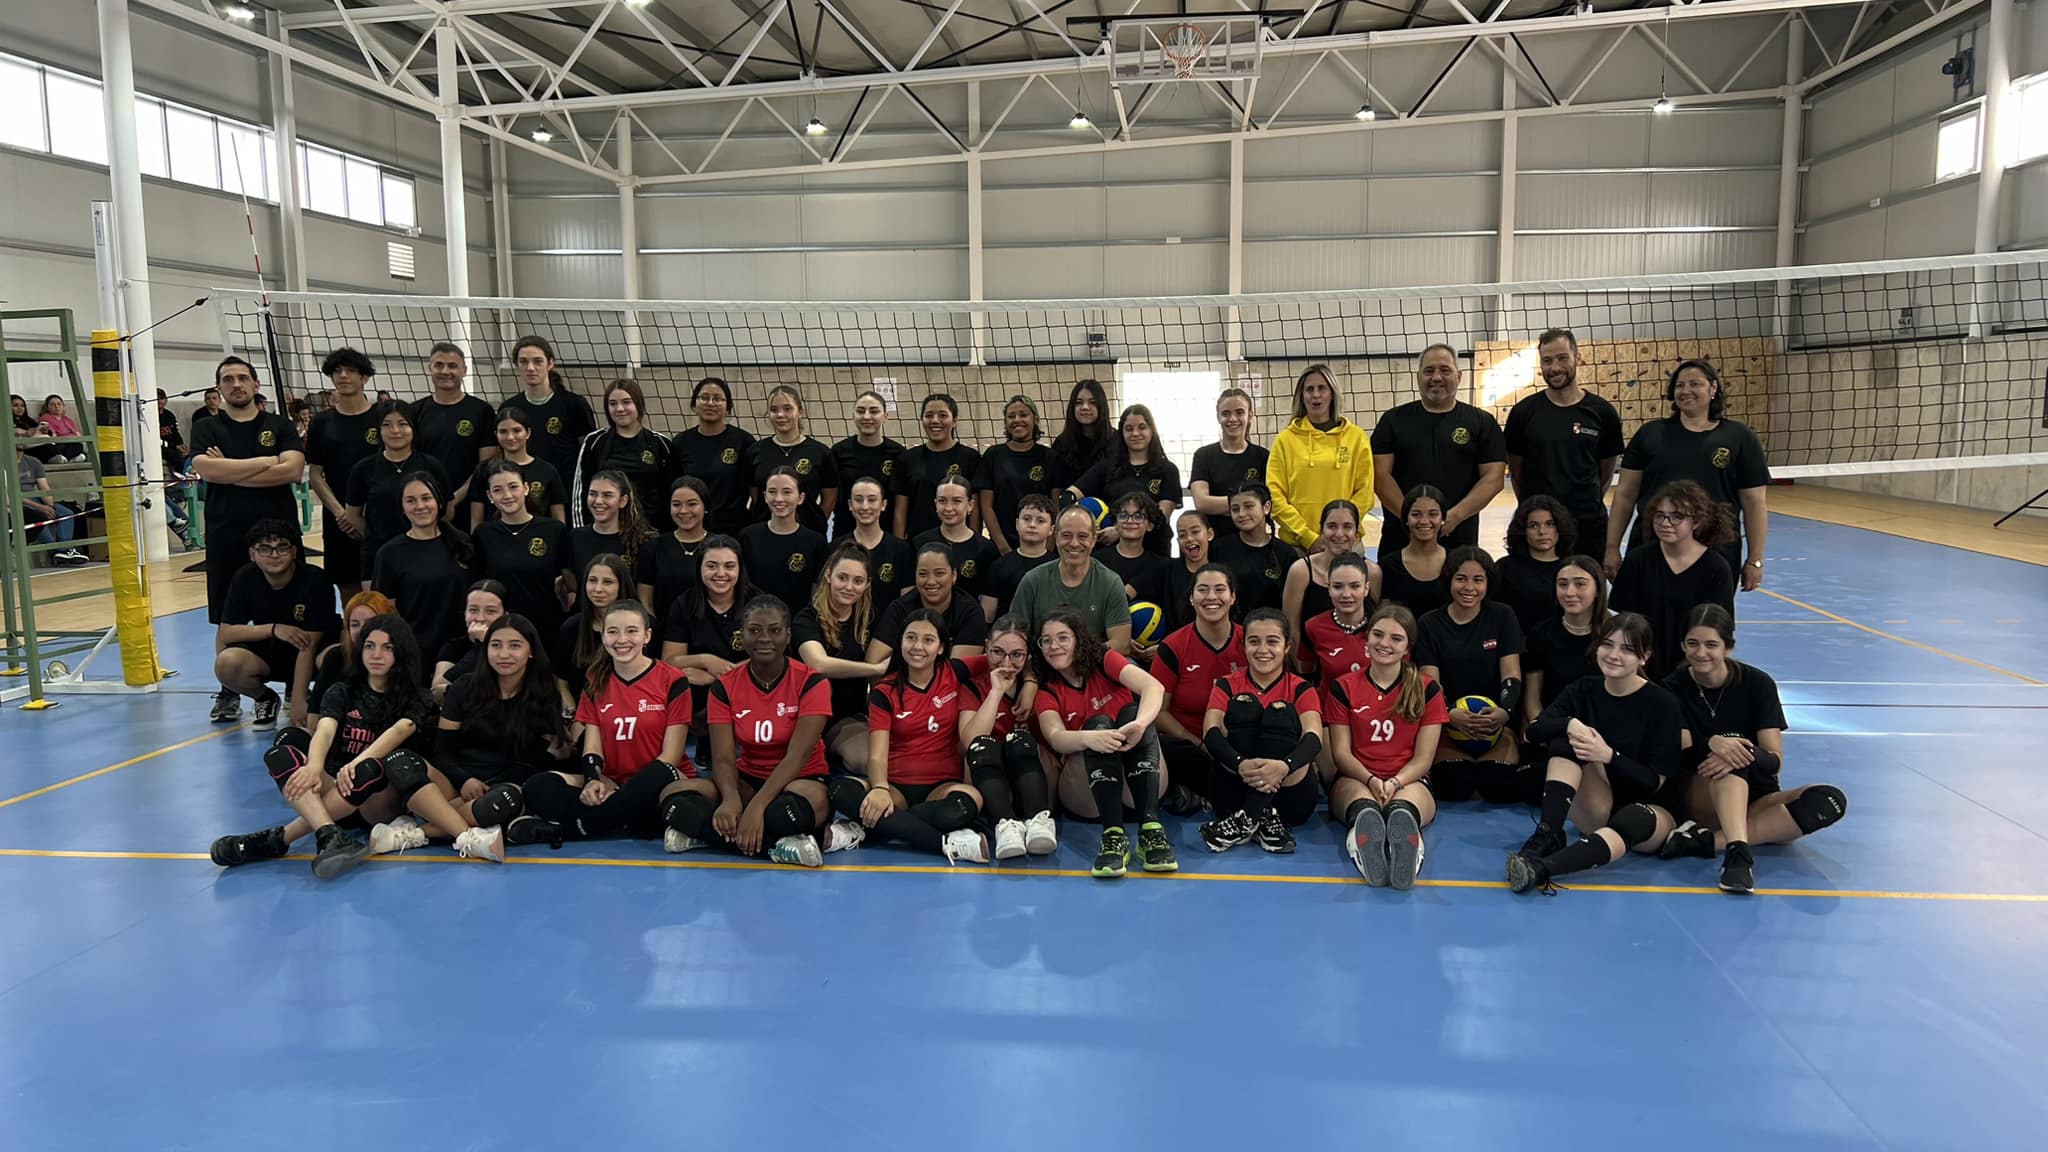 Se ha presentado en Illescas el nuevo club de voleibol "Linces Illescas" (Álbum de fotos)